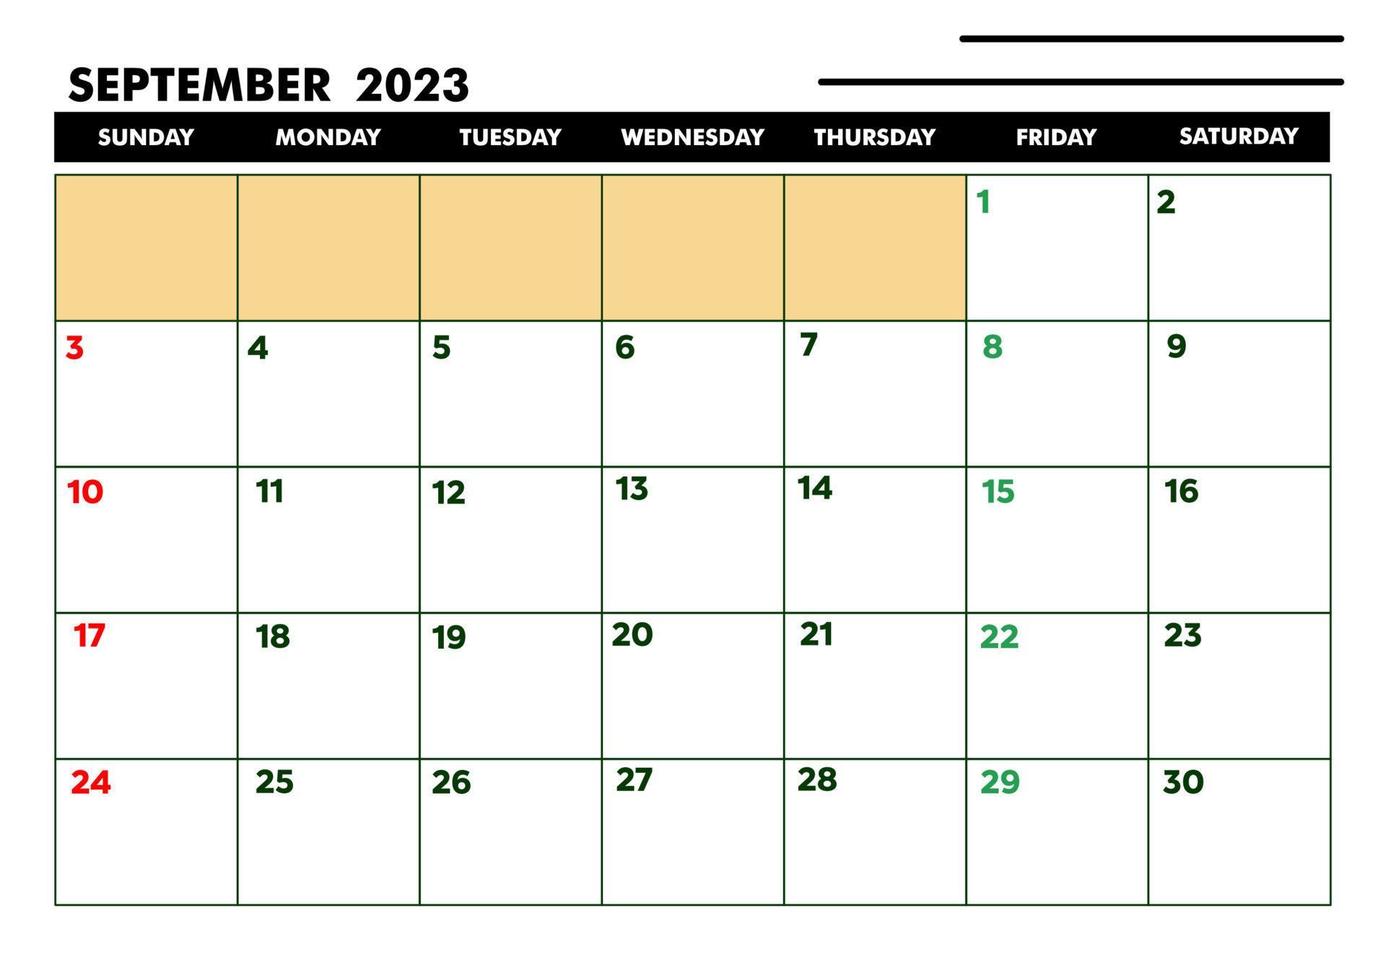 calendário a4 para agenda ou agenda setembro 2023 vetor